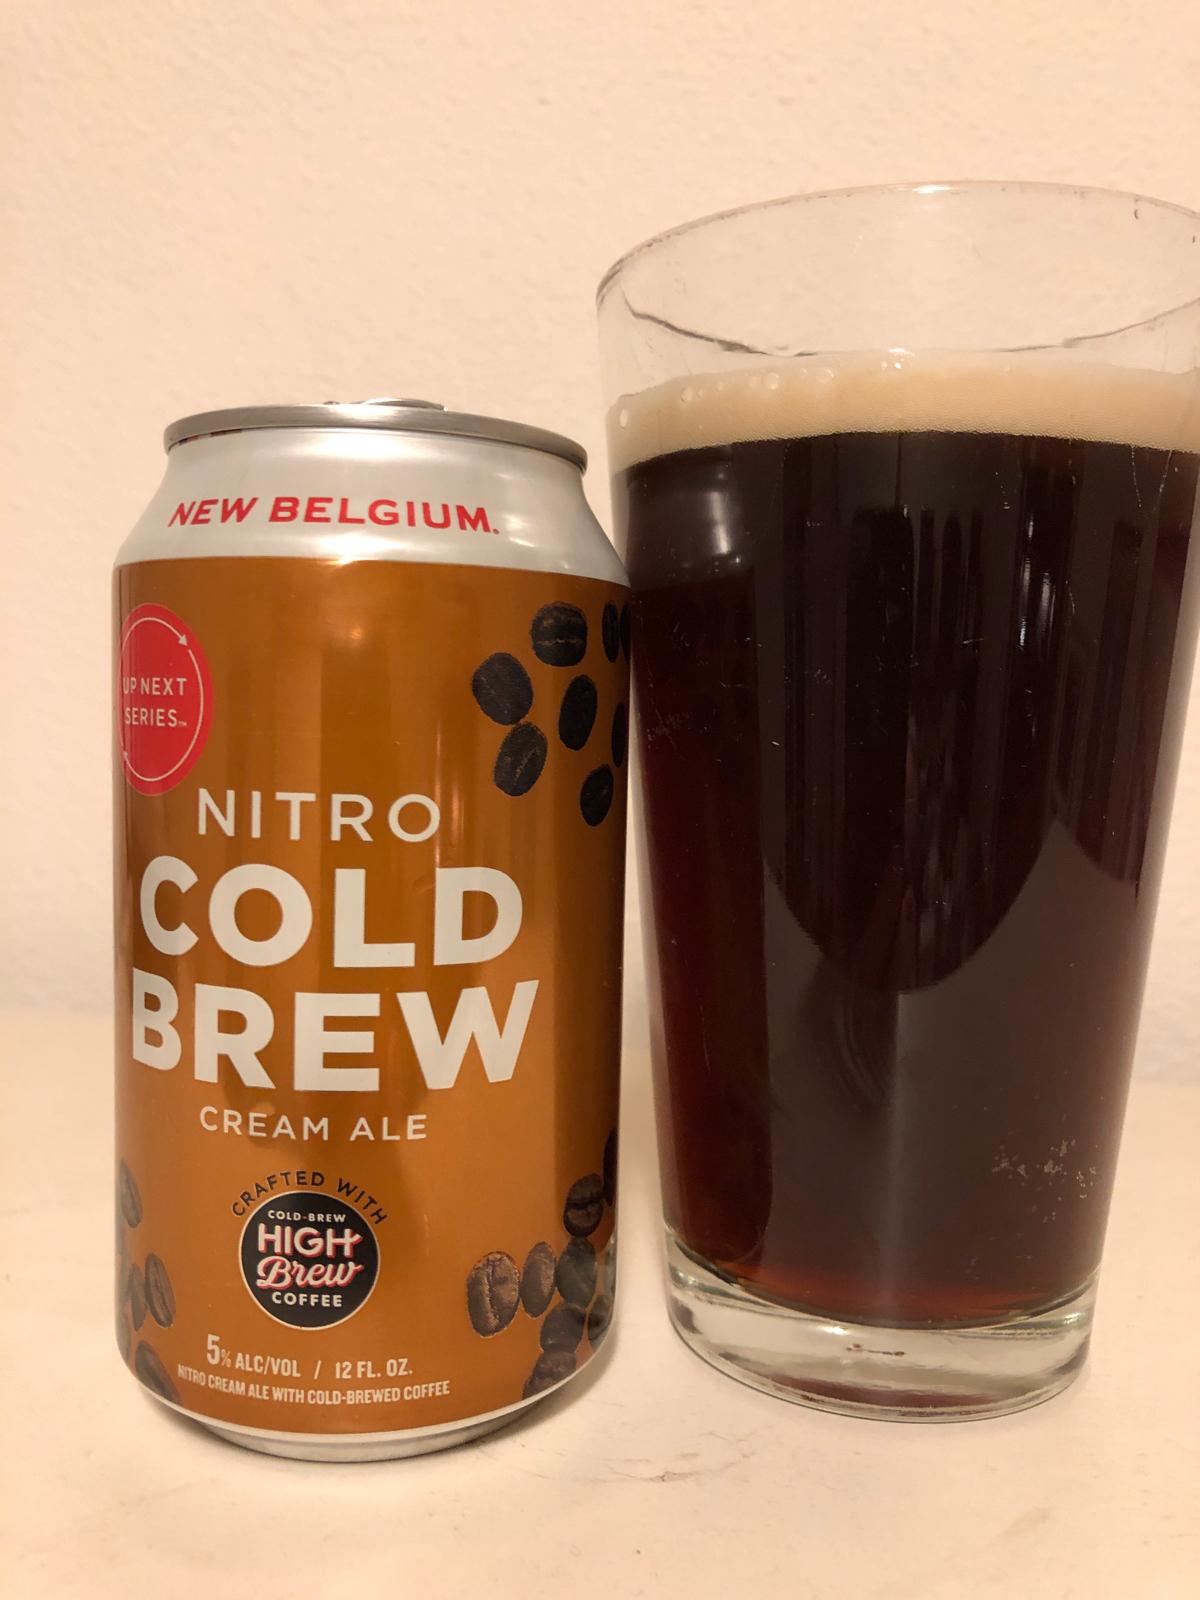 Up Next Series: Cold Brew Cream Ale (Nitro)